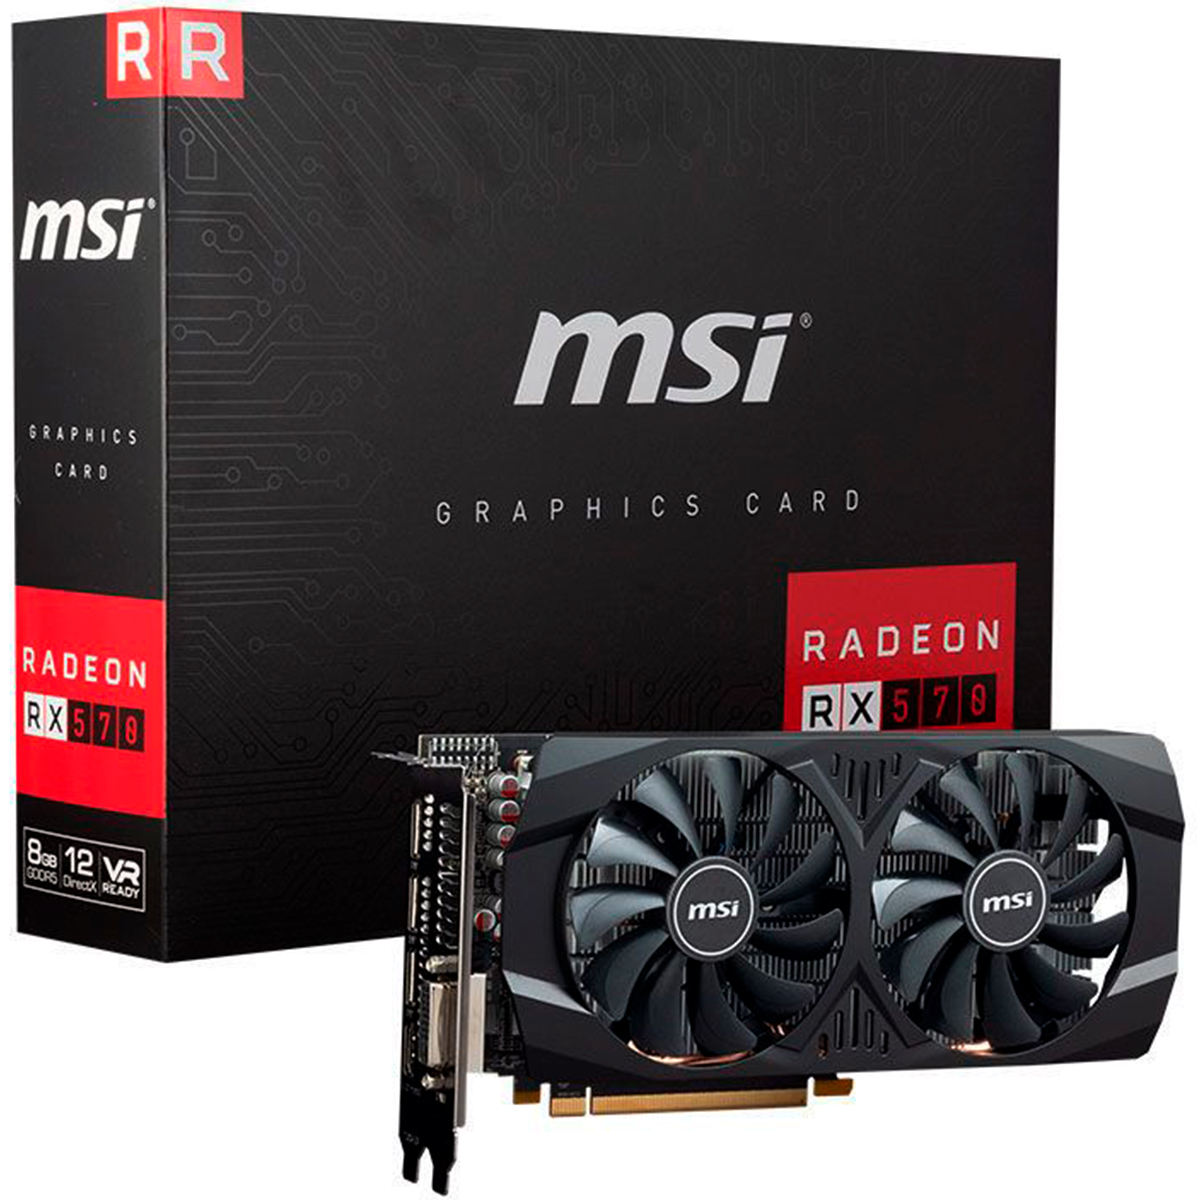 AMD Radeon RX 570 8GB GDDR5 256bits - MSI 912-V809-3428